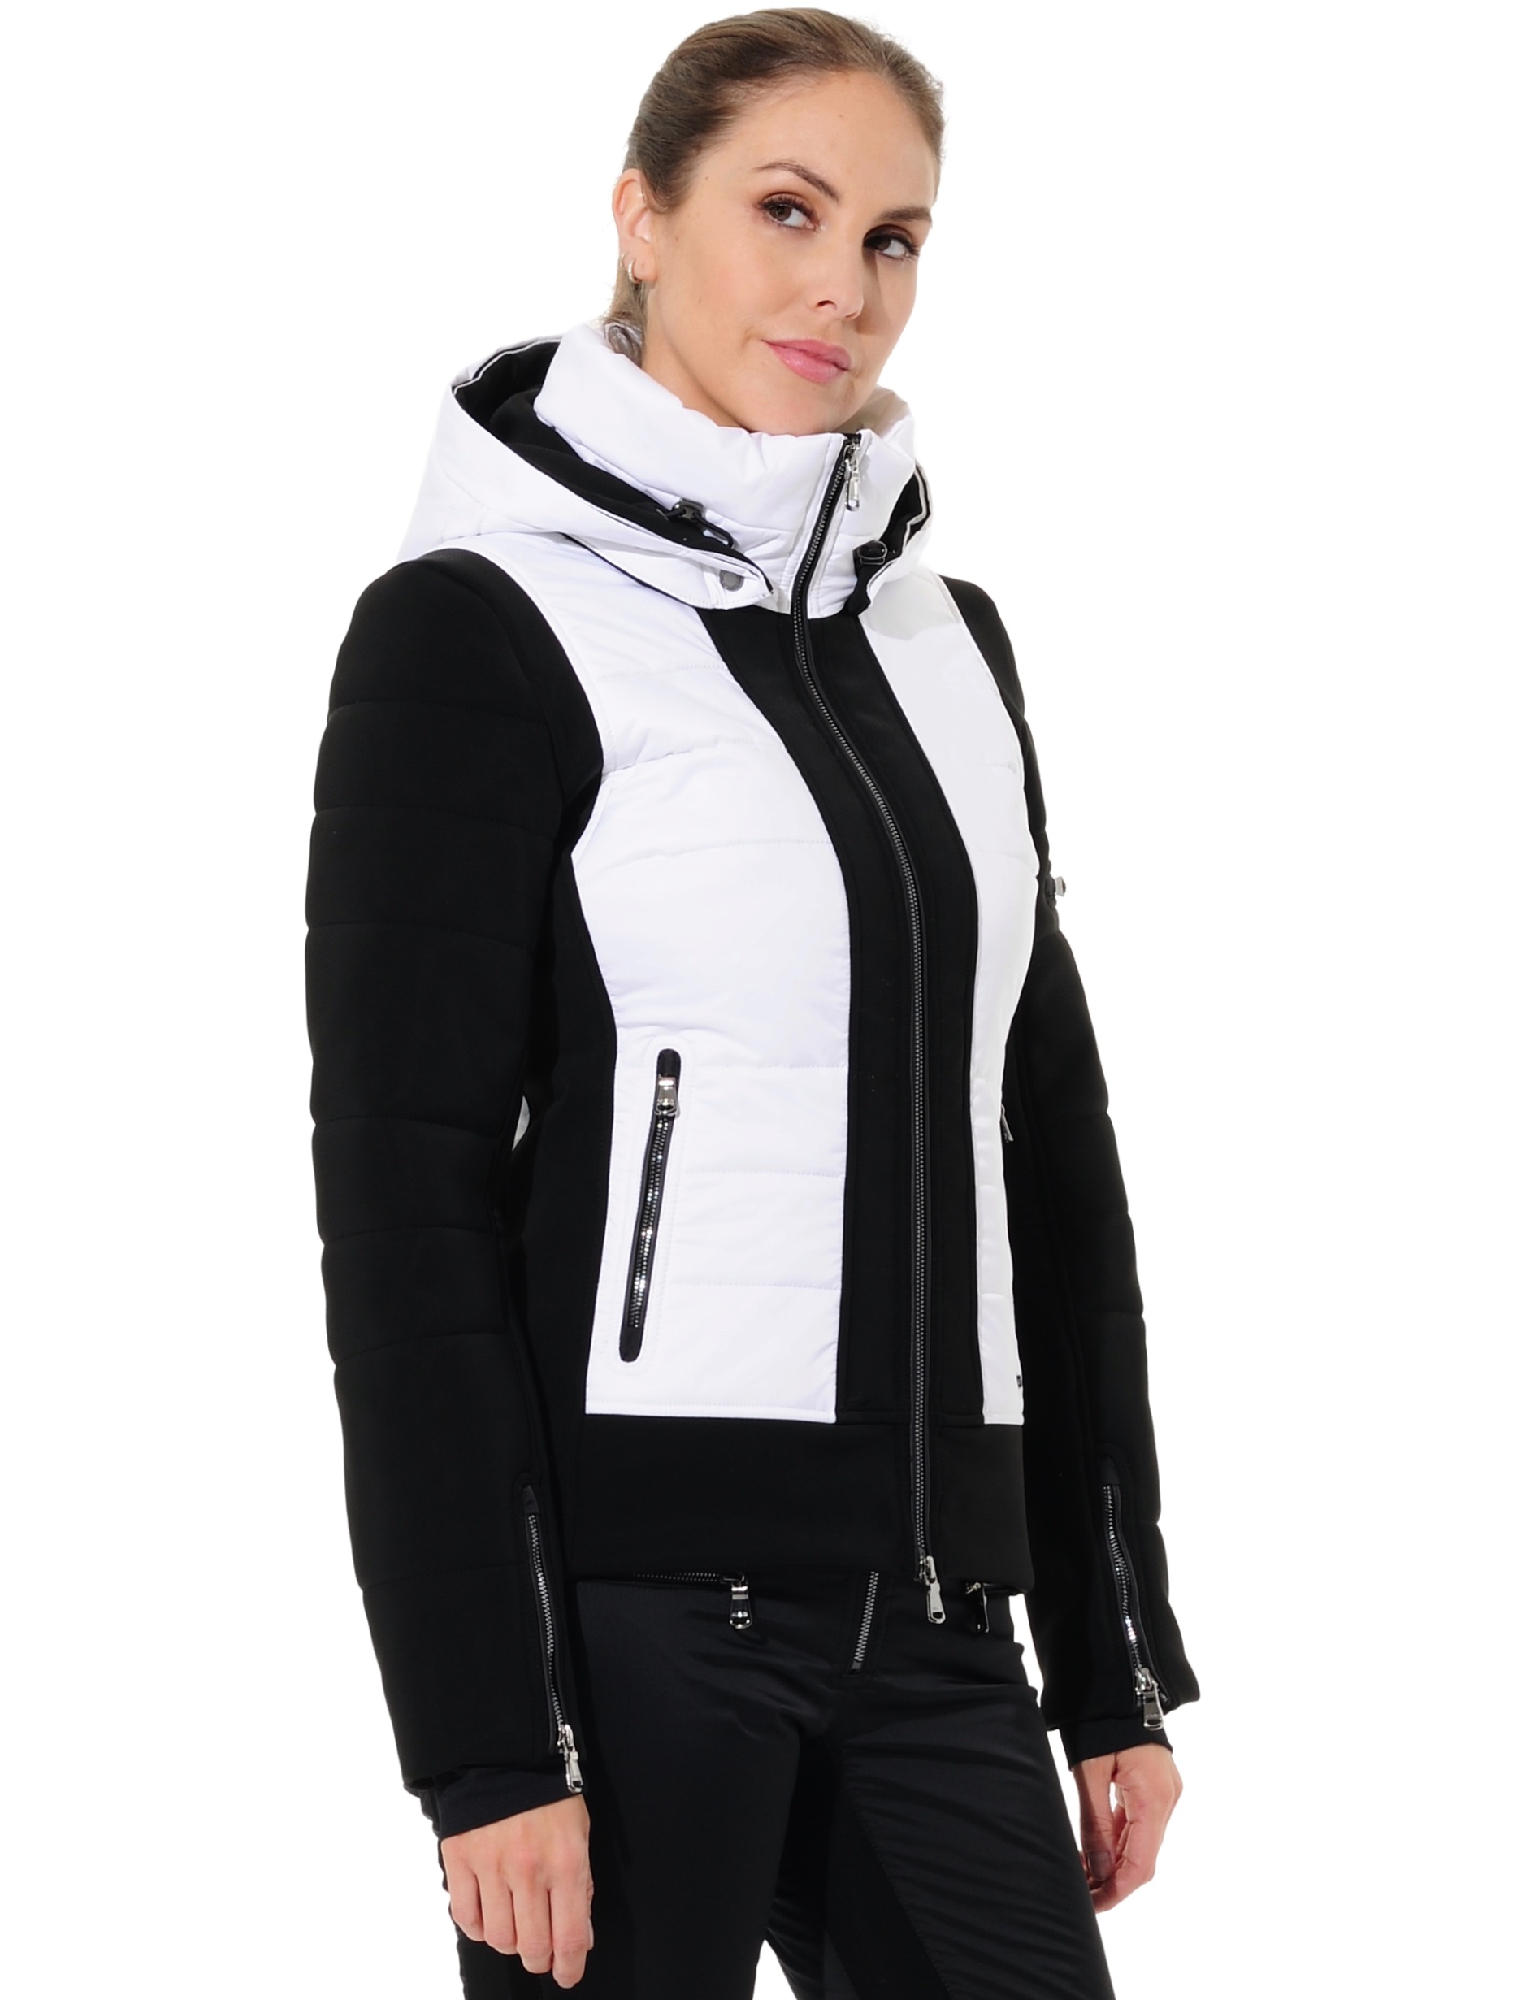 stretch ski jacket black/white 